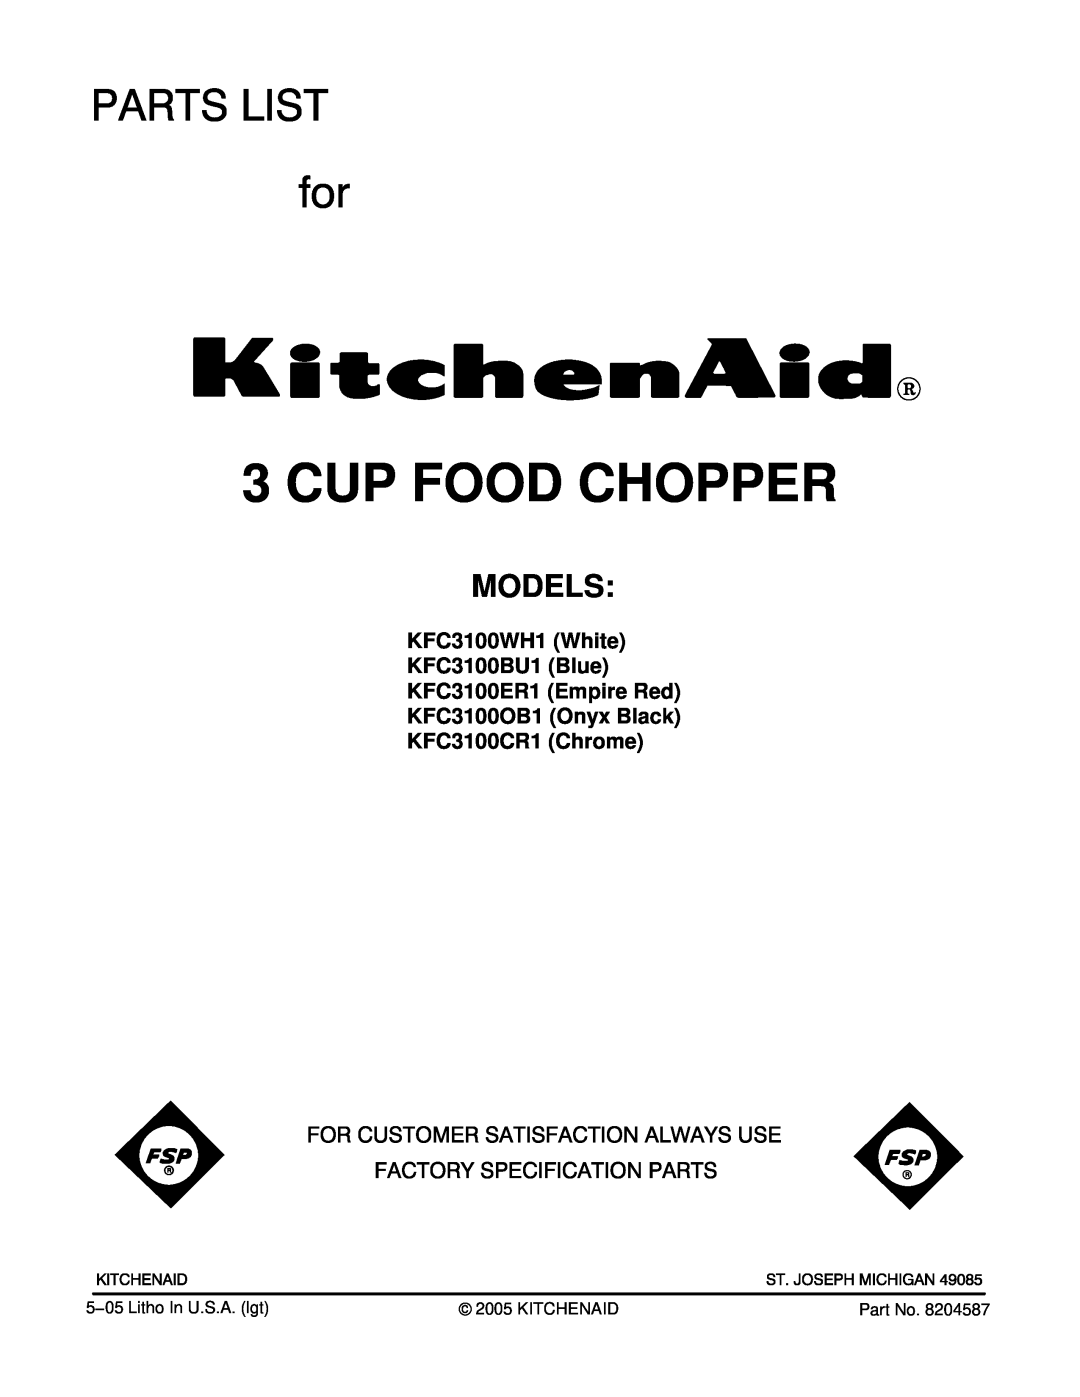 KitchenAid manual KFC3100WH1 White KFC3100BU1 Blue KFC3100ER1 Empire Red, KFC3100OB1 Onyx Black KFC3100CR1 Chrome 